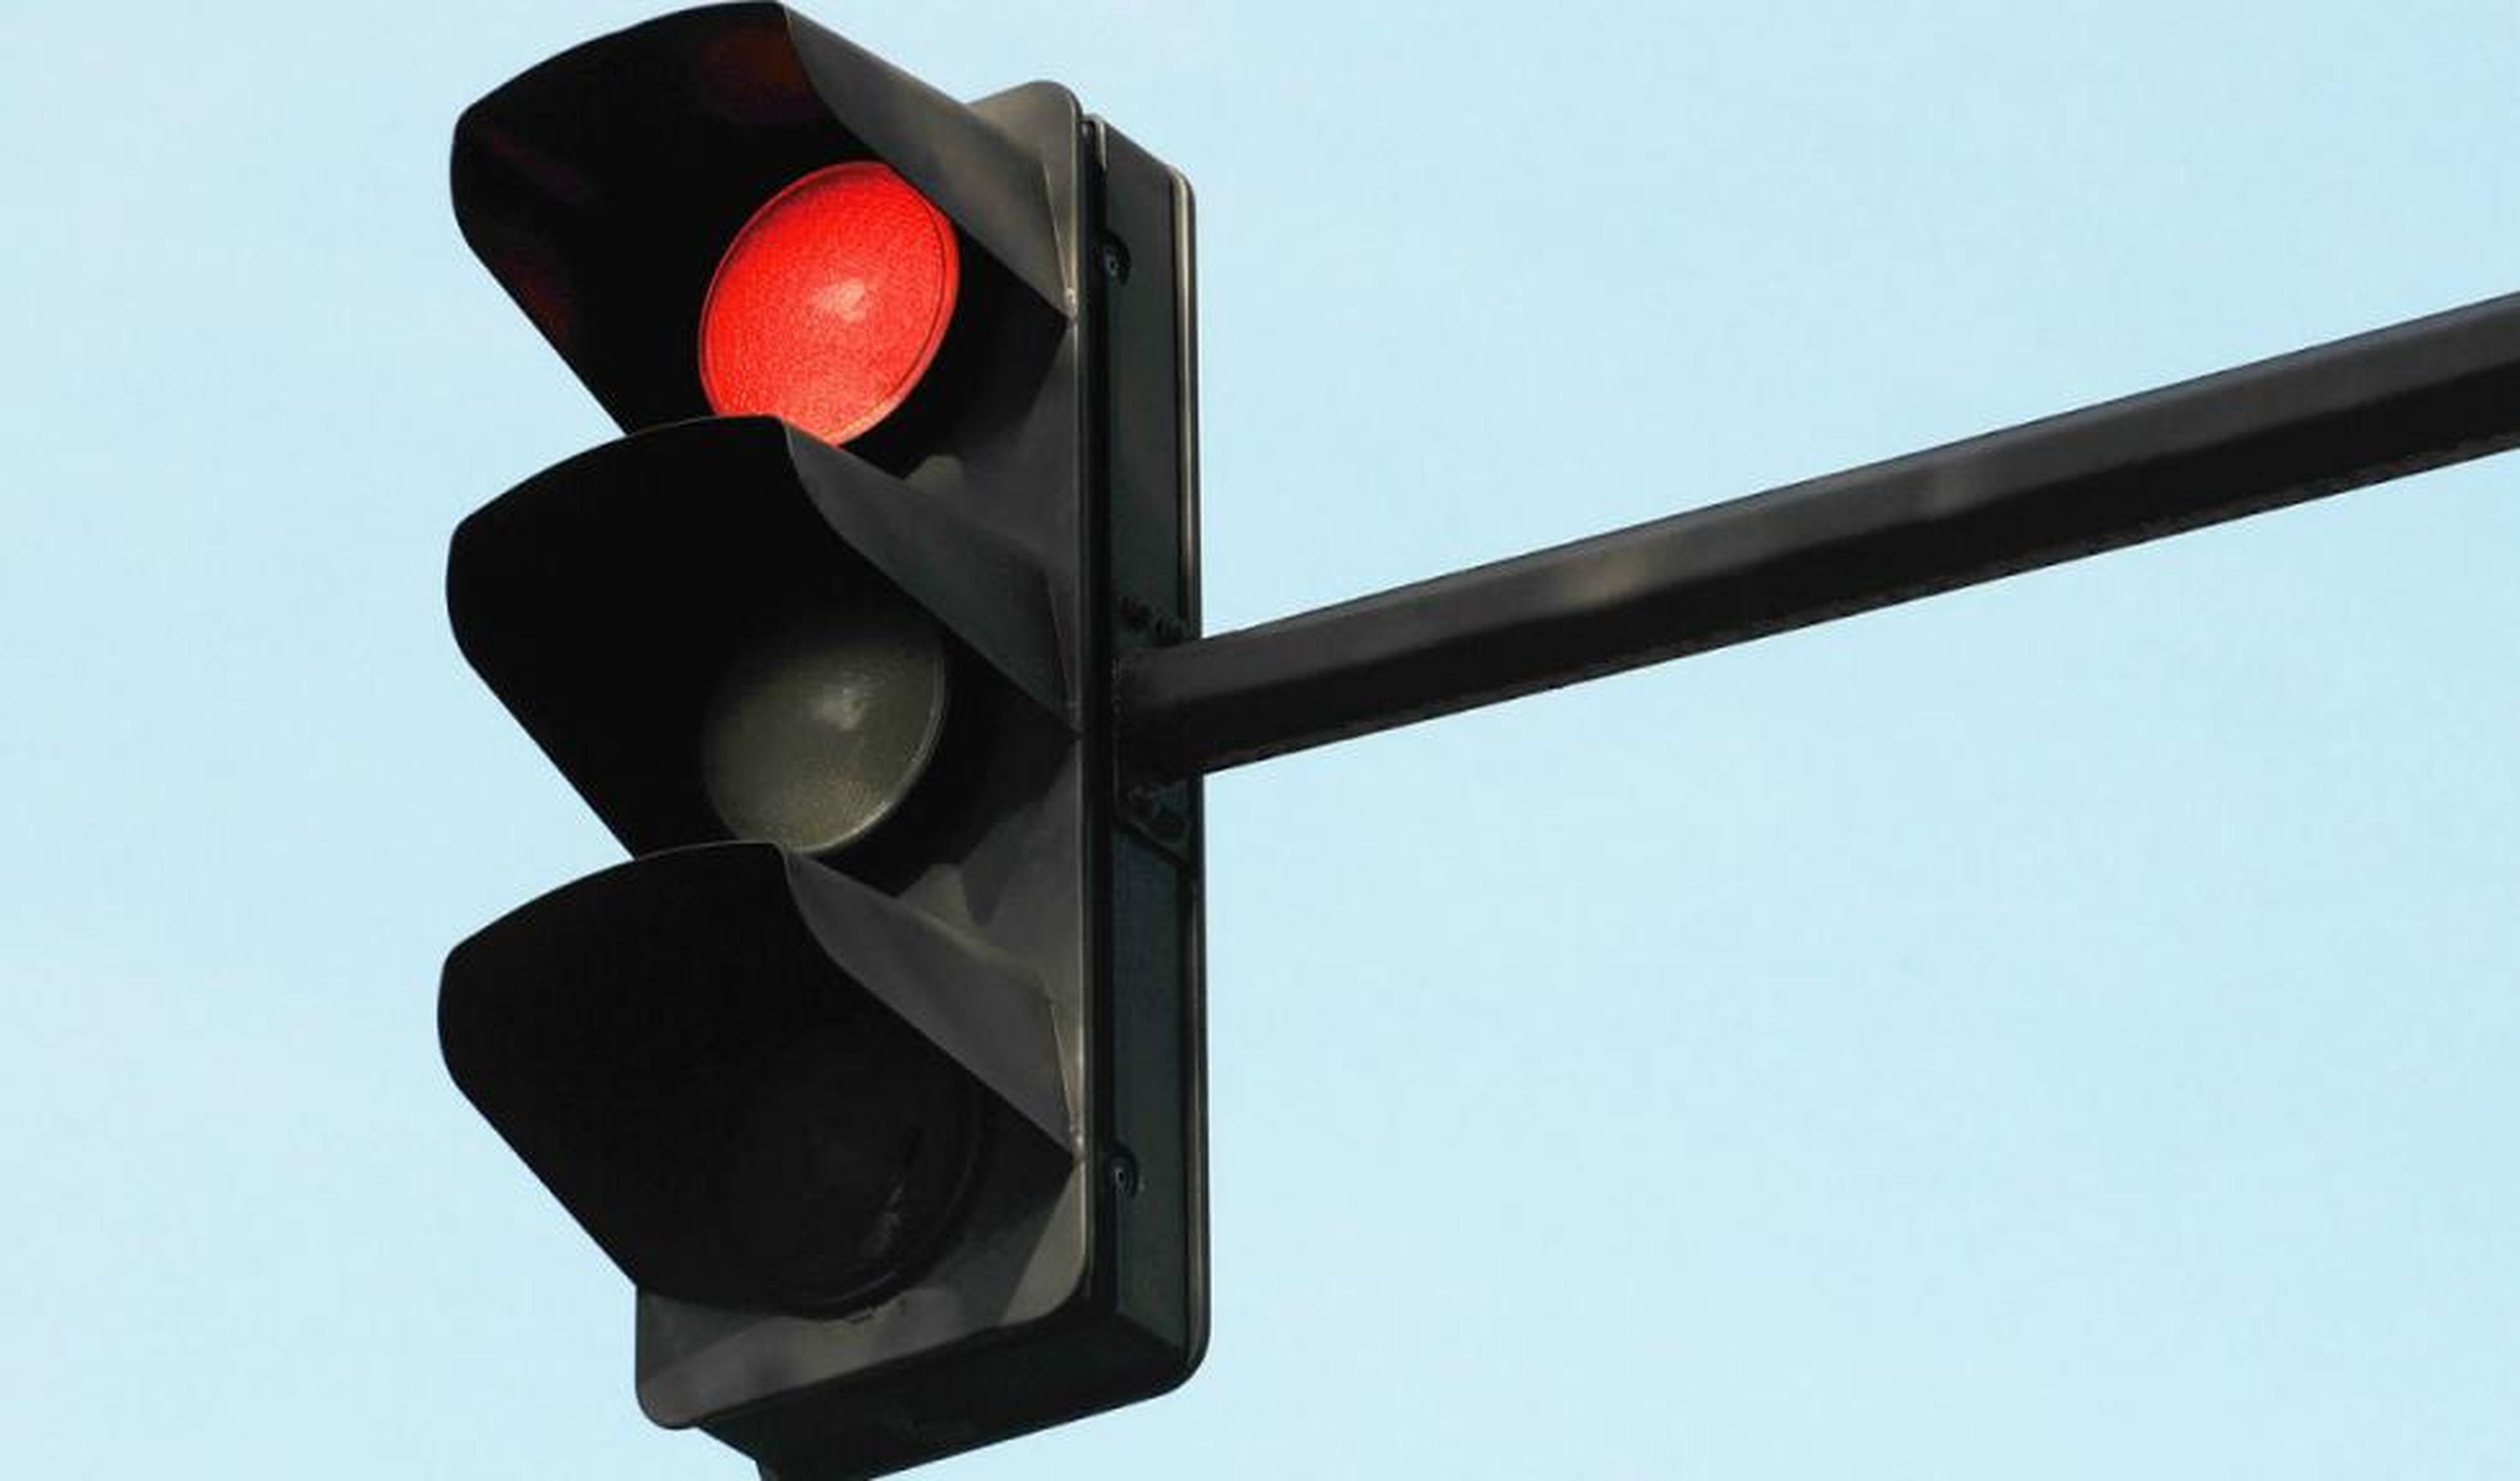 Los alcaldes que se han rebelado por culpa de unos semáforos